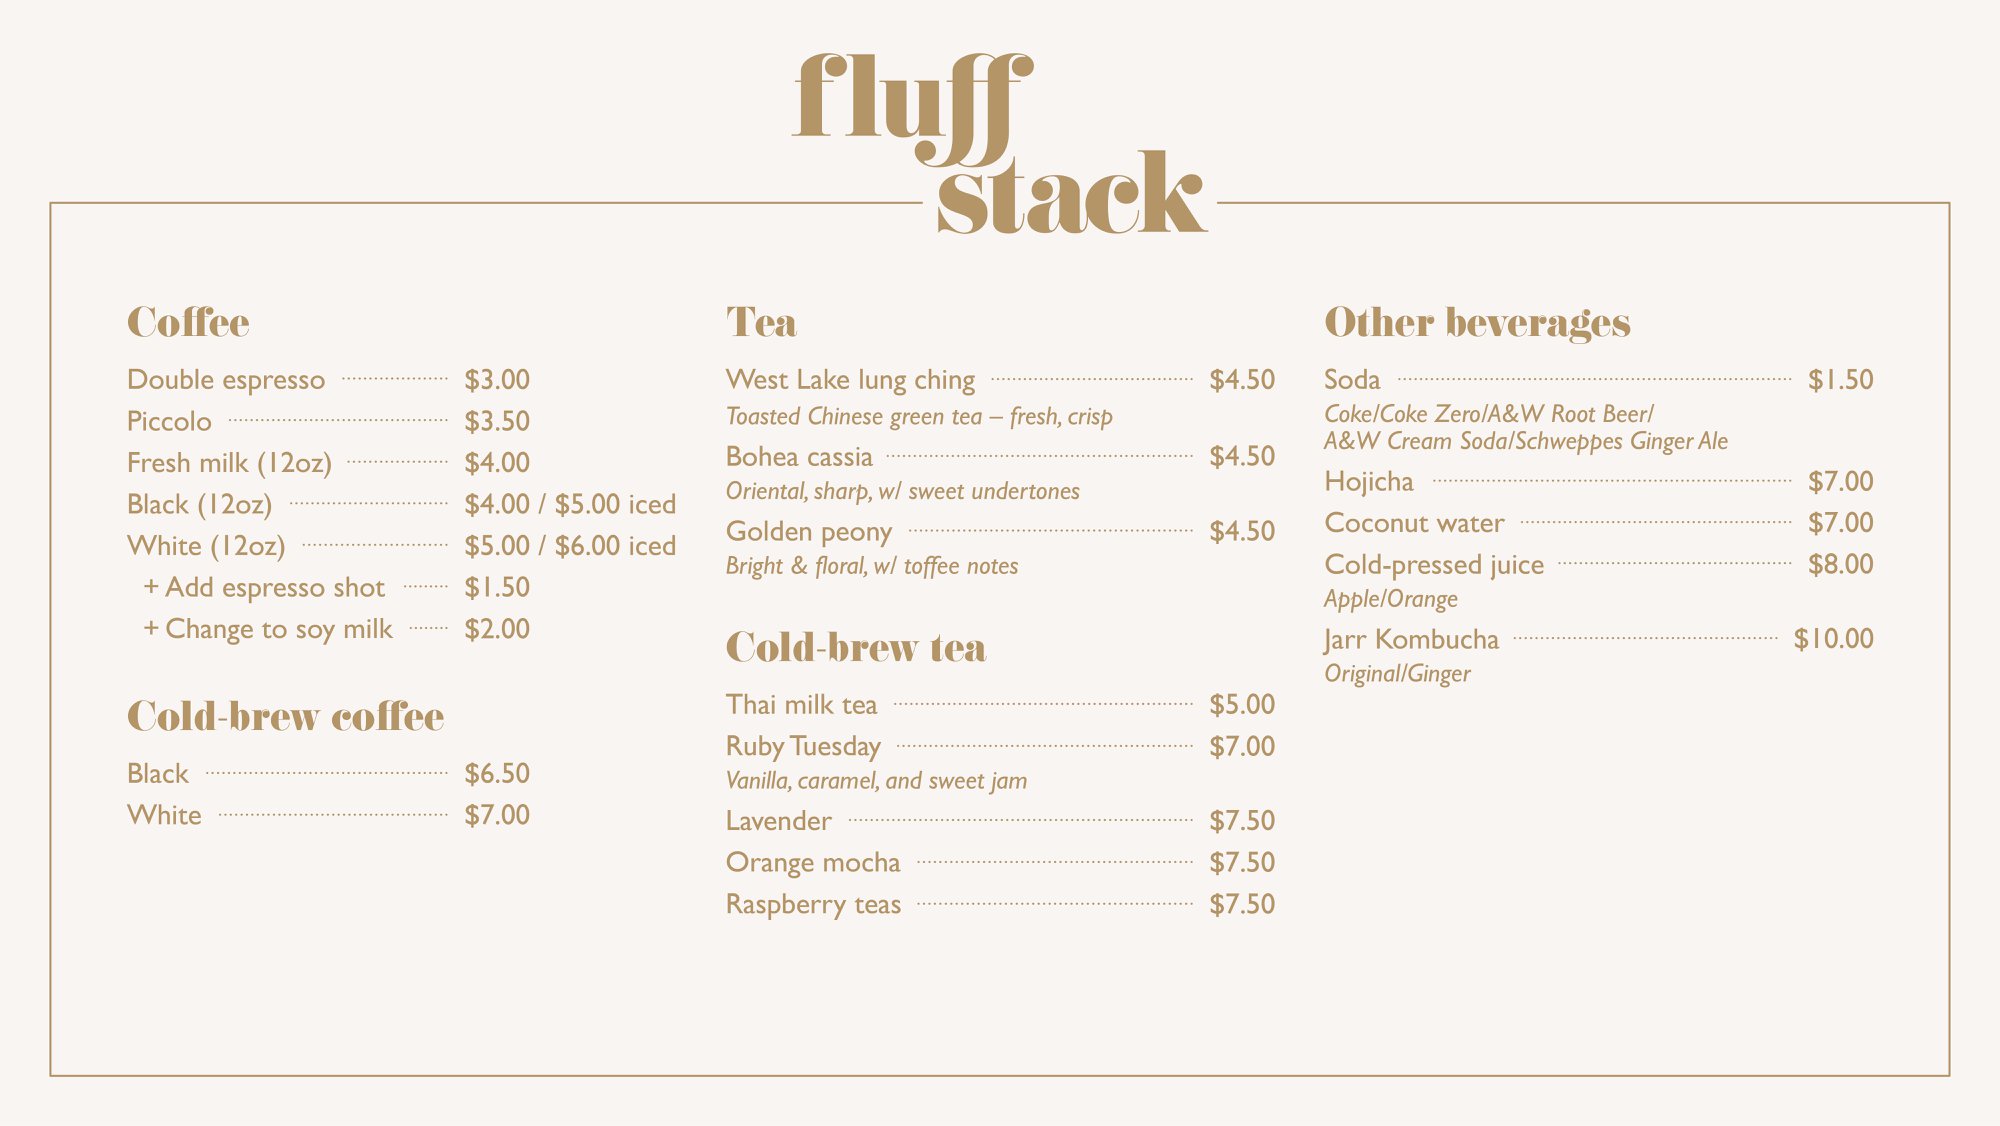 fluff stack menu